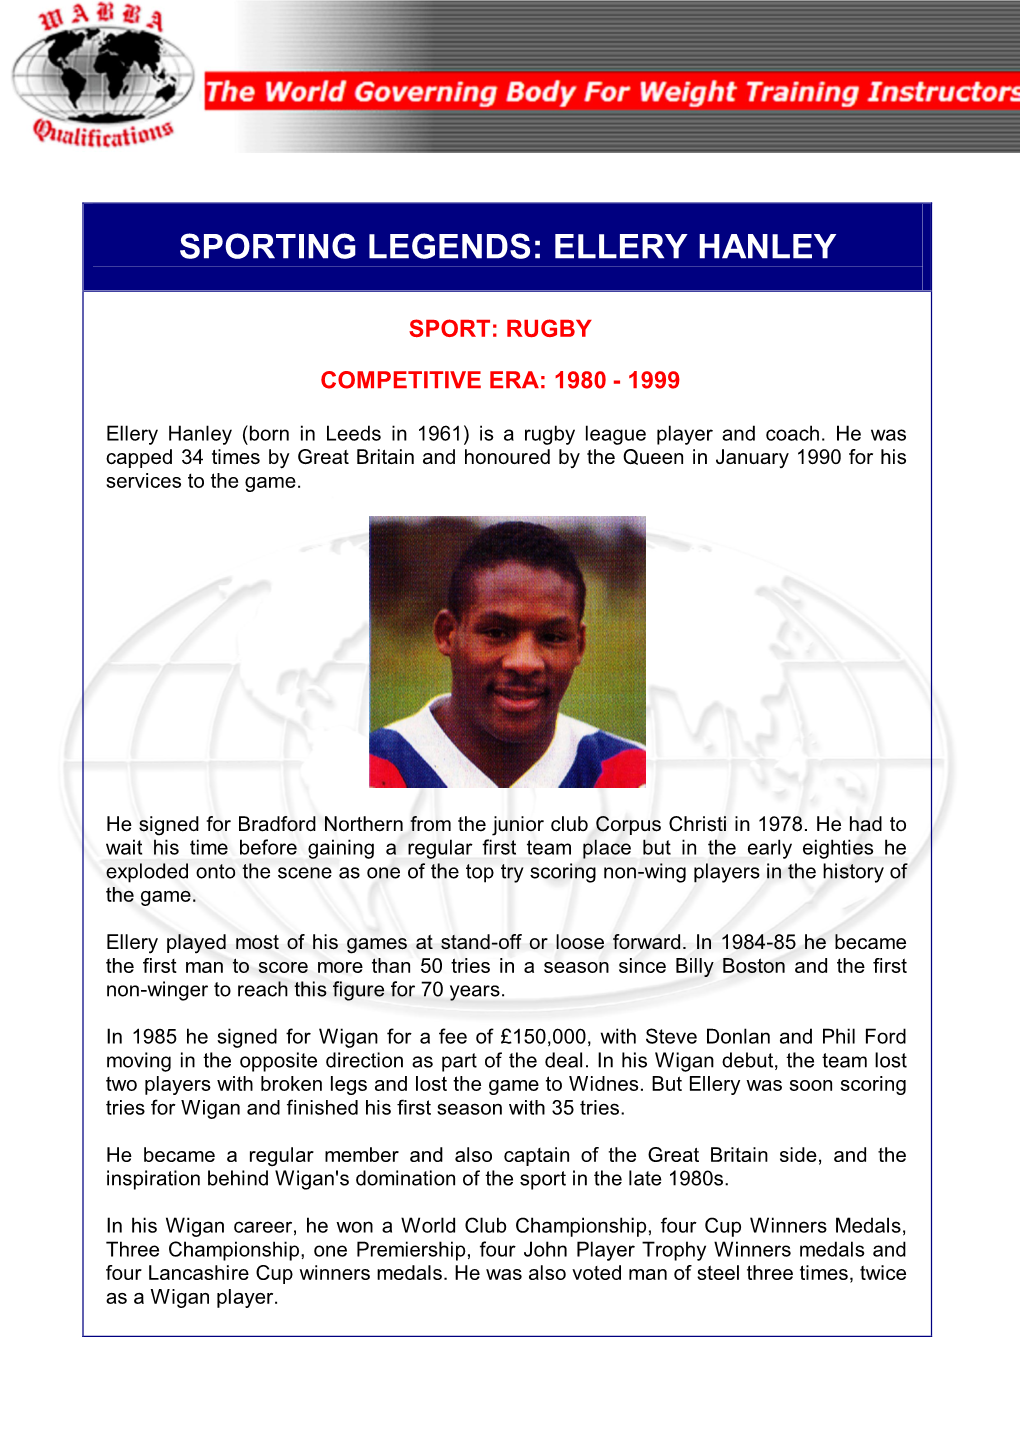 Ellery Hanley